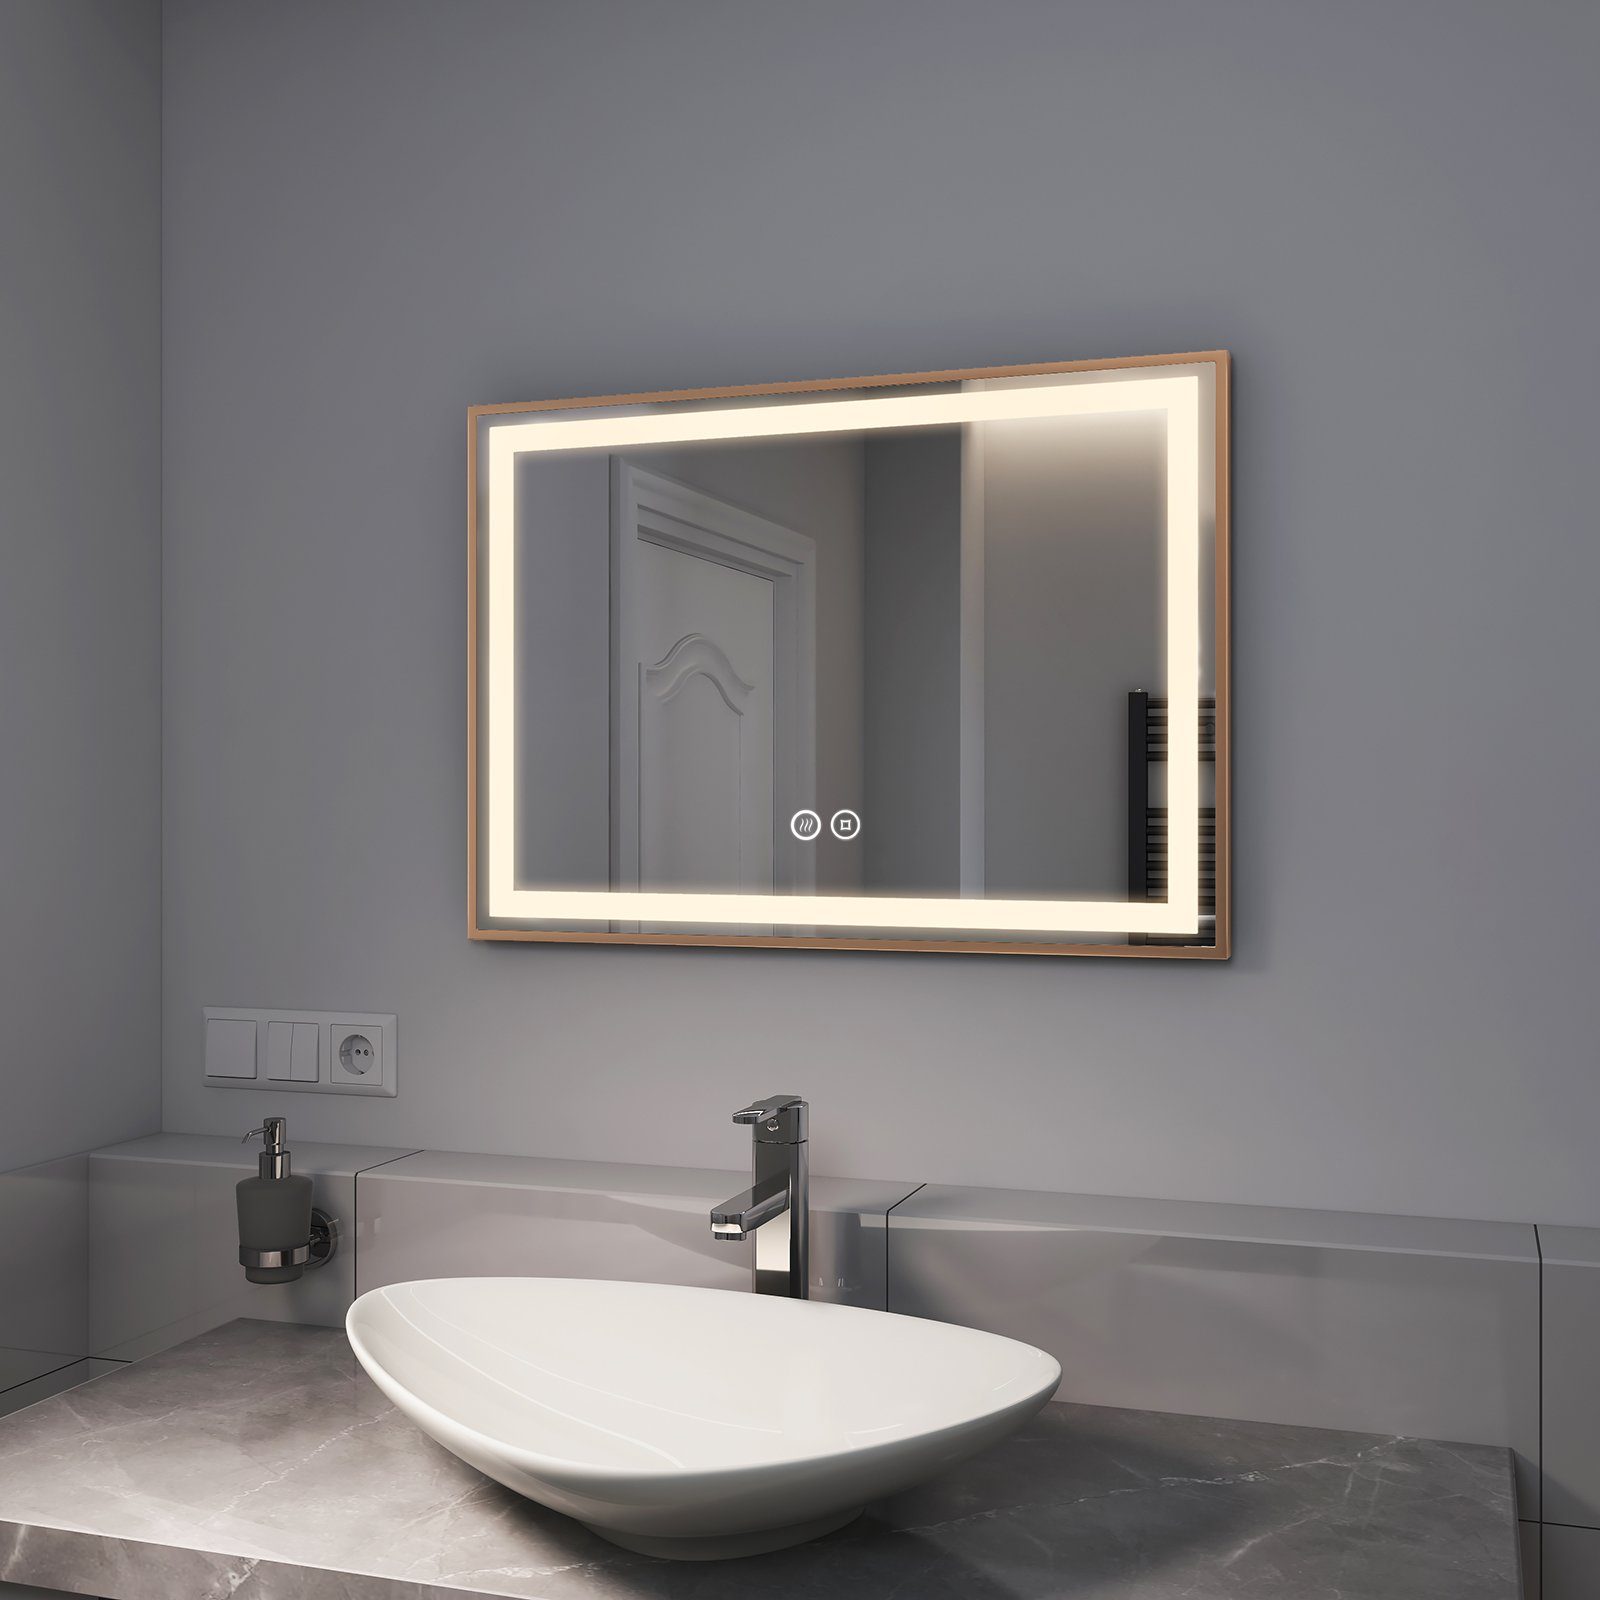 EMKE Badspiegel Badspiegel mit Beleuchtung Spiegel mit LED Badezimmerspiegel, mit Beschlagfrei Dimmbar, Goldener Rahmen 70-100cm